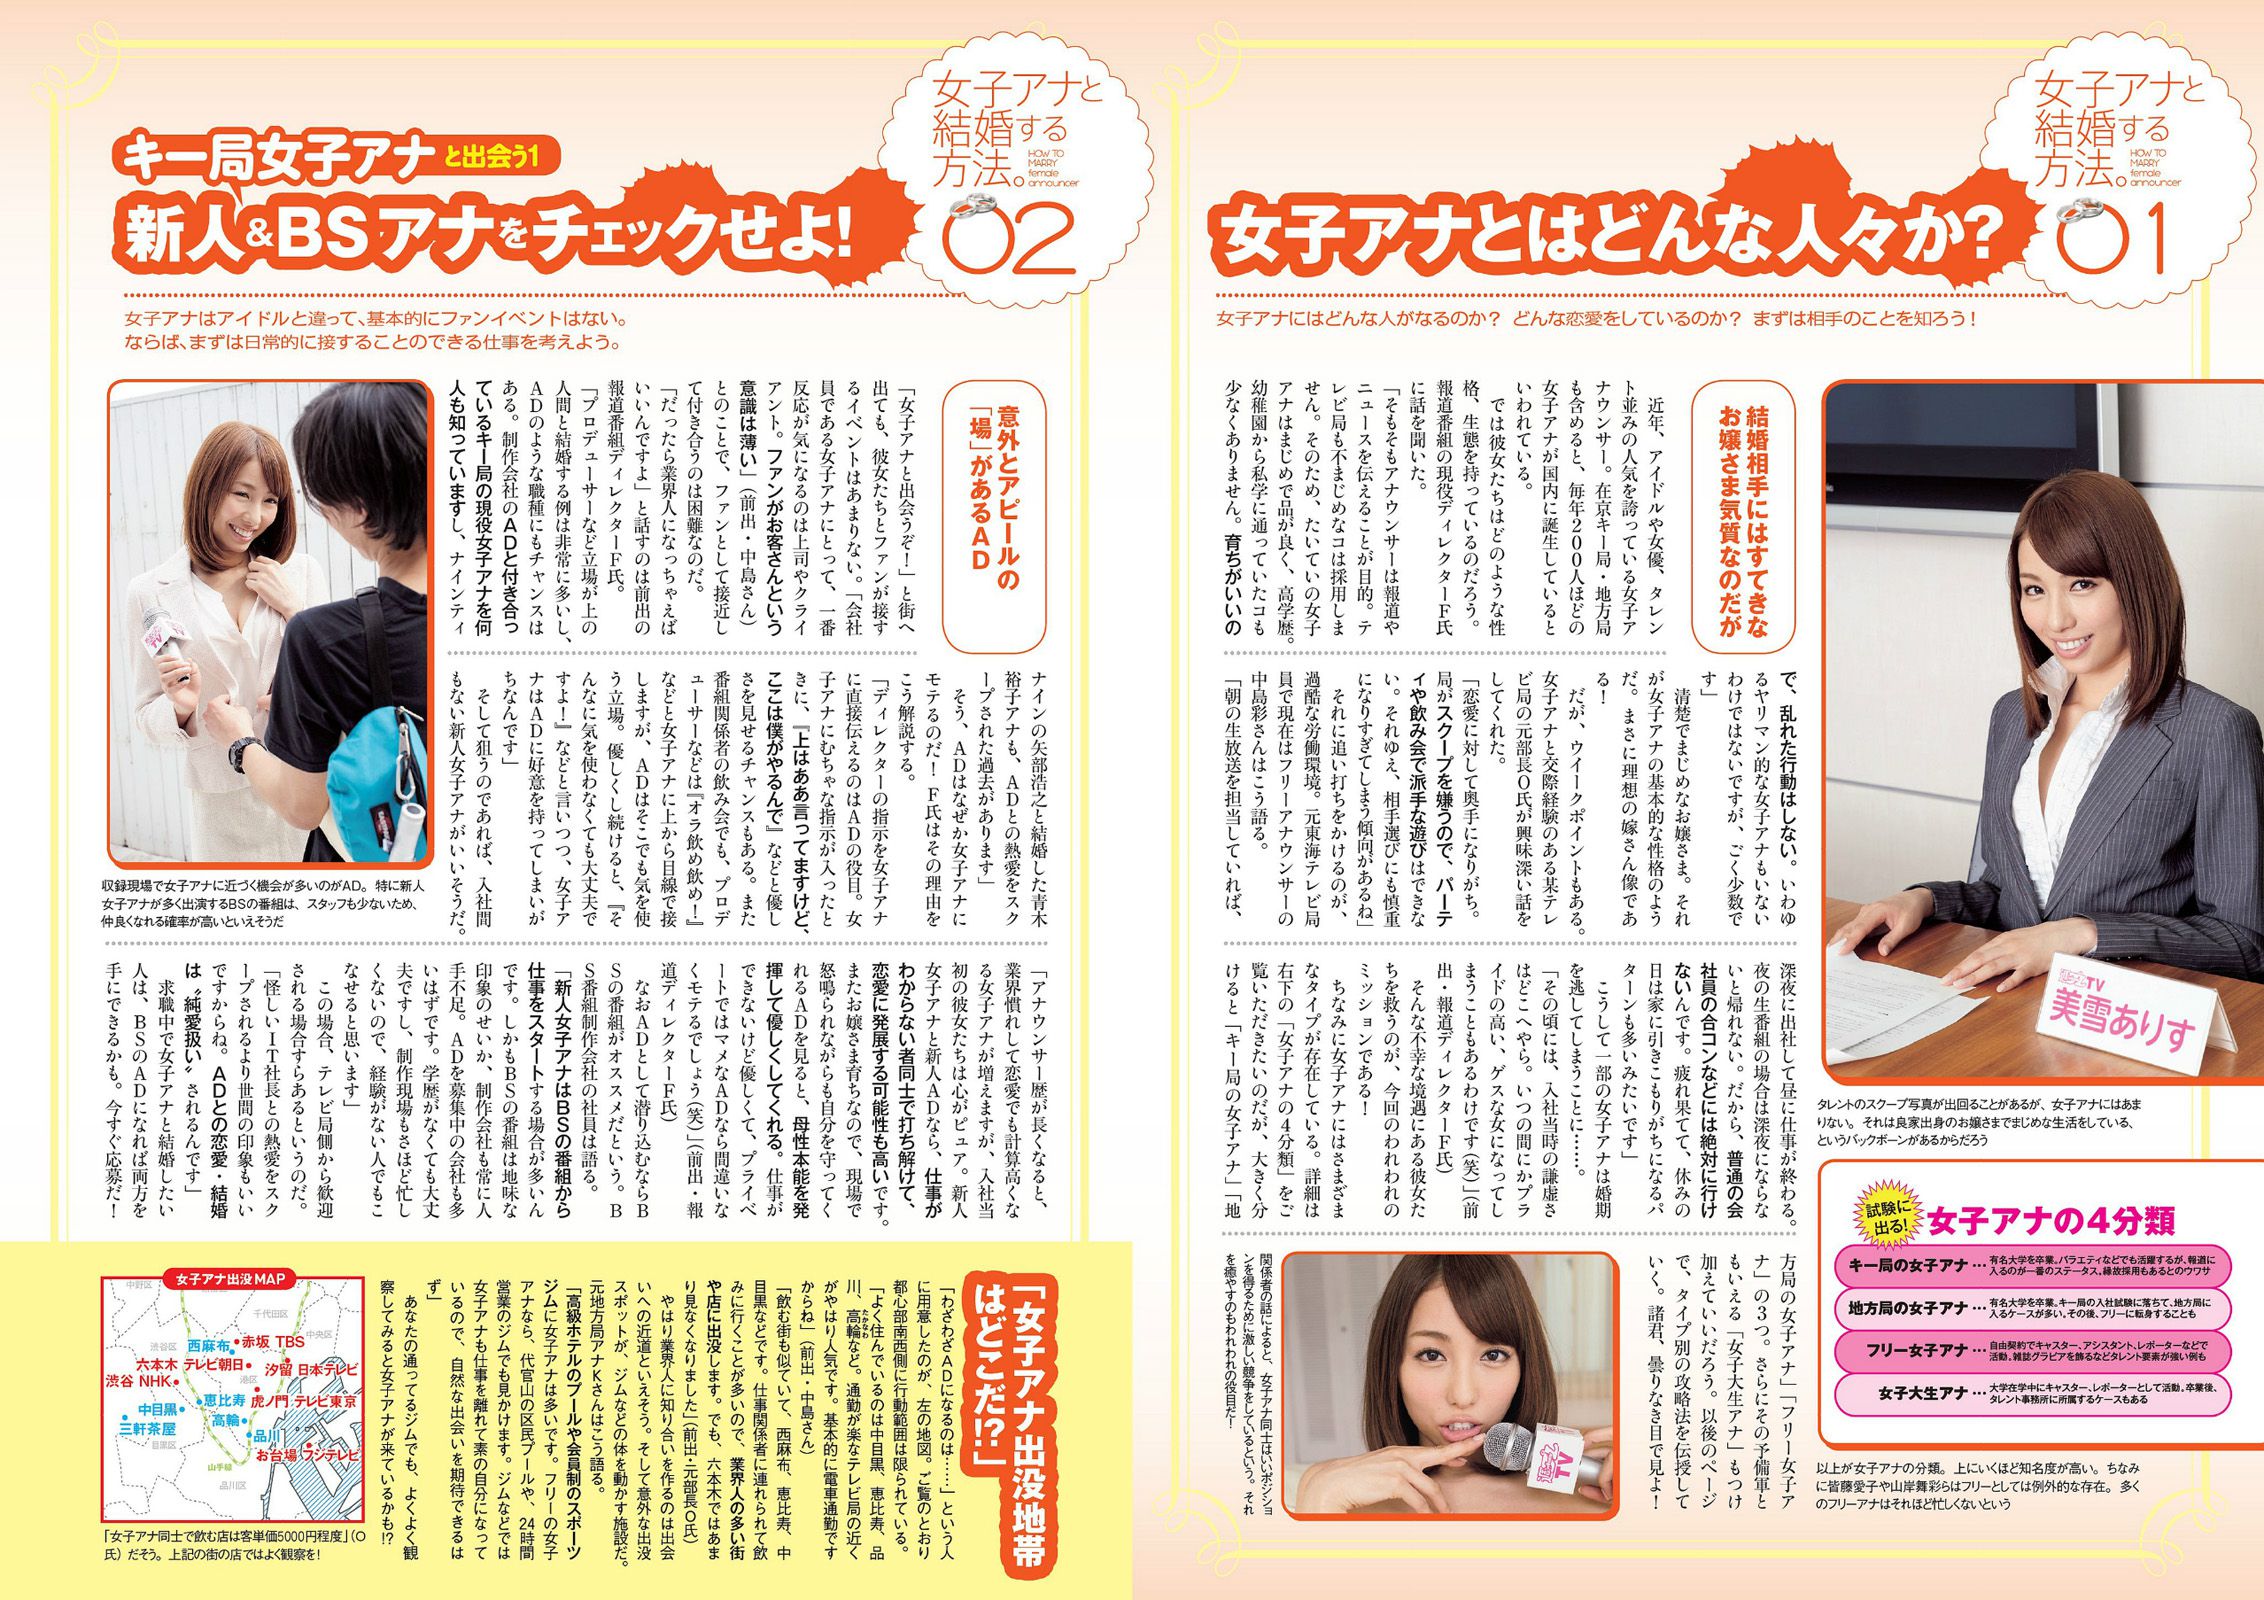 Ruriko Kojima SKE48 Chiyo Koma Chiyo Koma Mai Hakase [Wekelijkse Playboy] 2014 No.18 Foto Mori Pagina 26 No.21bc53